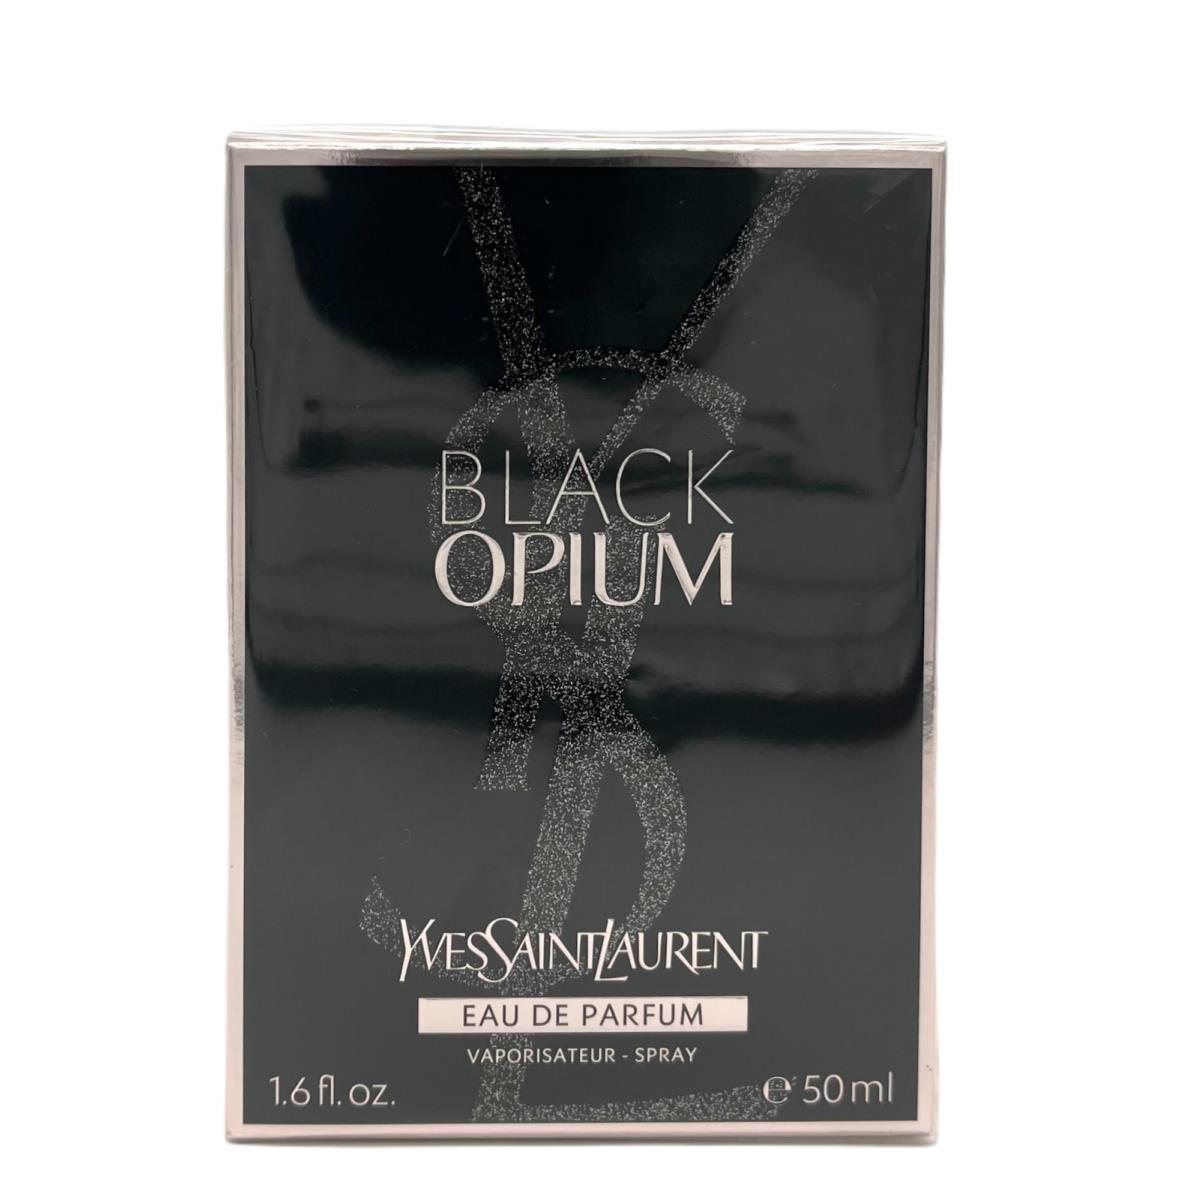 Black Opium by Yves Saint Laurent For Women 1.6 oz Eau de Parfum Spray